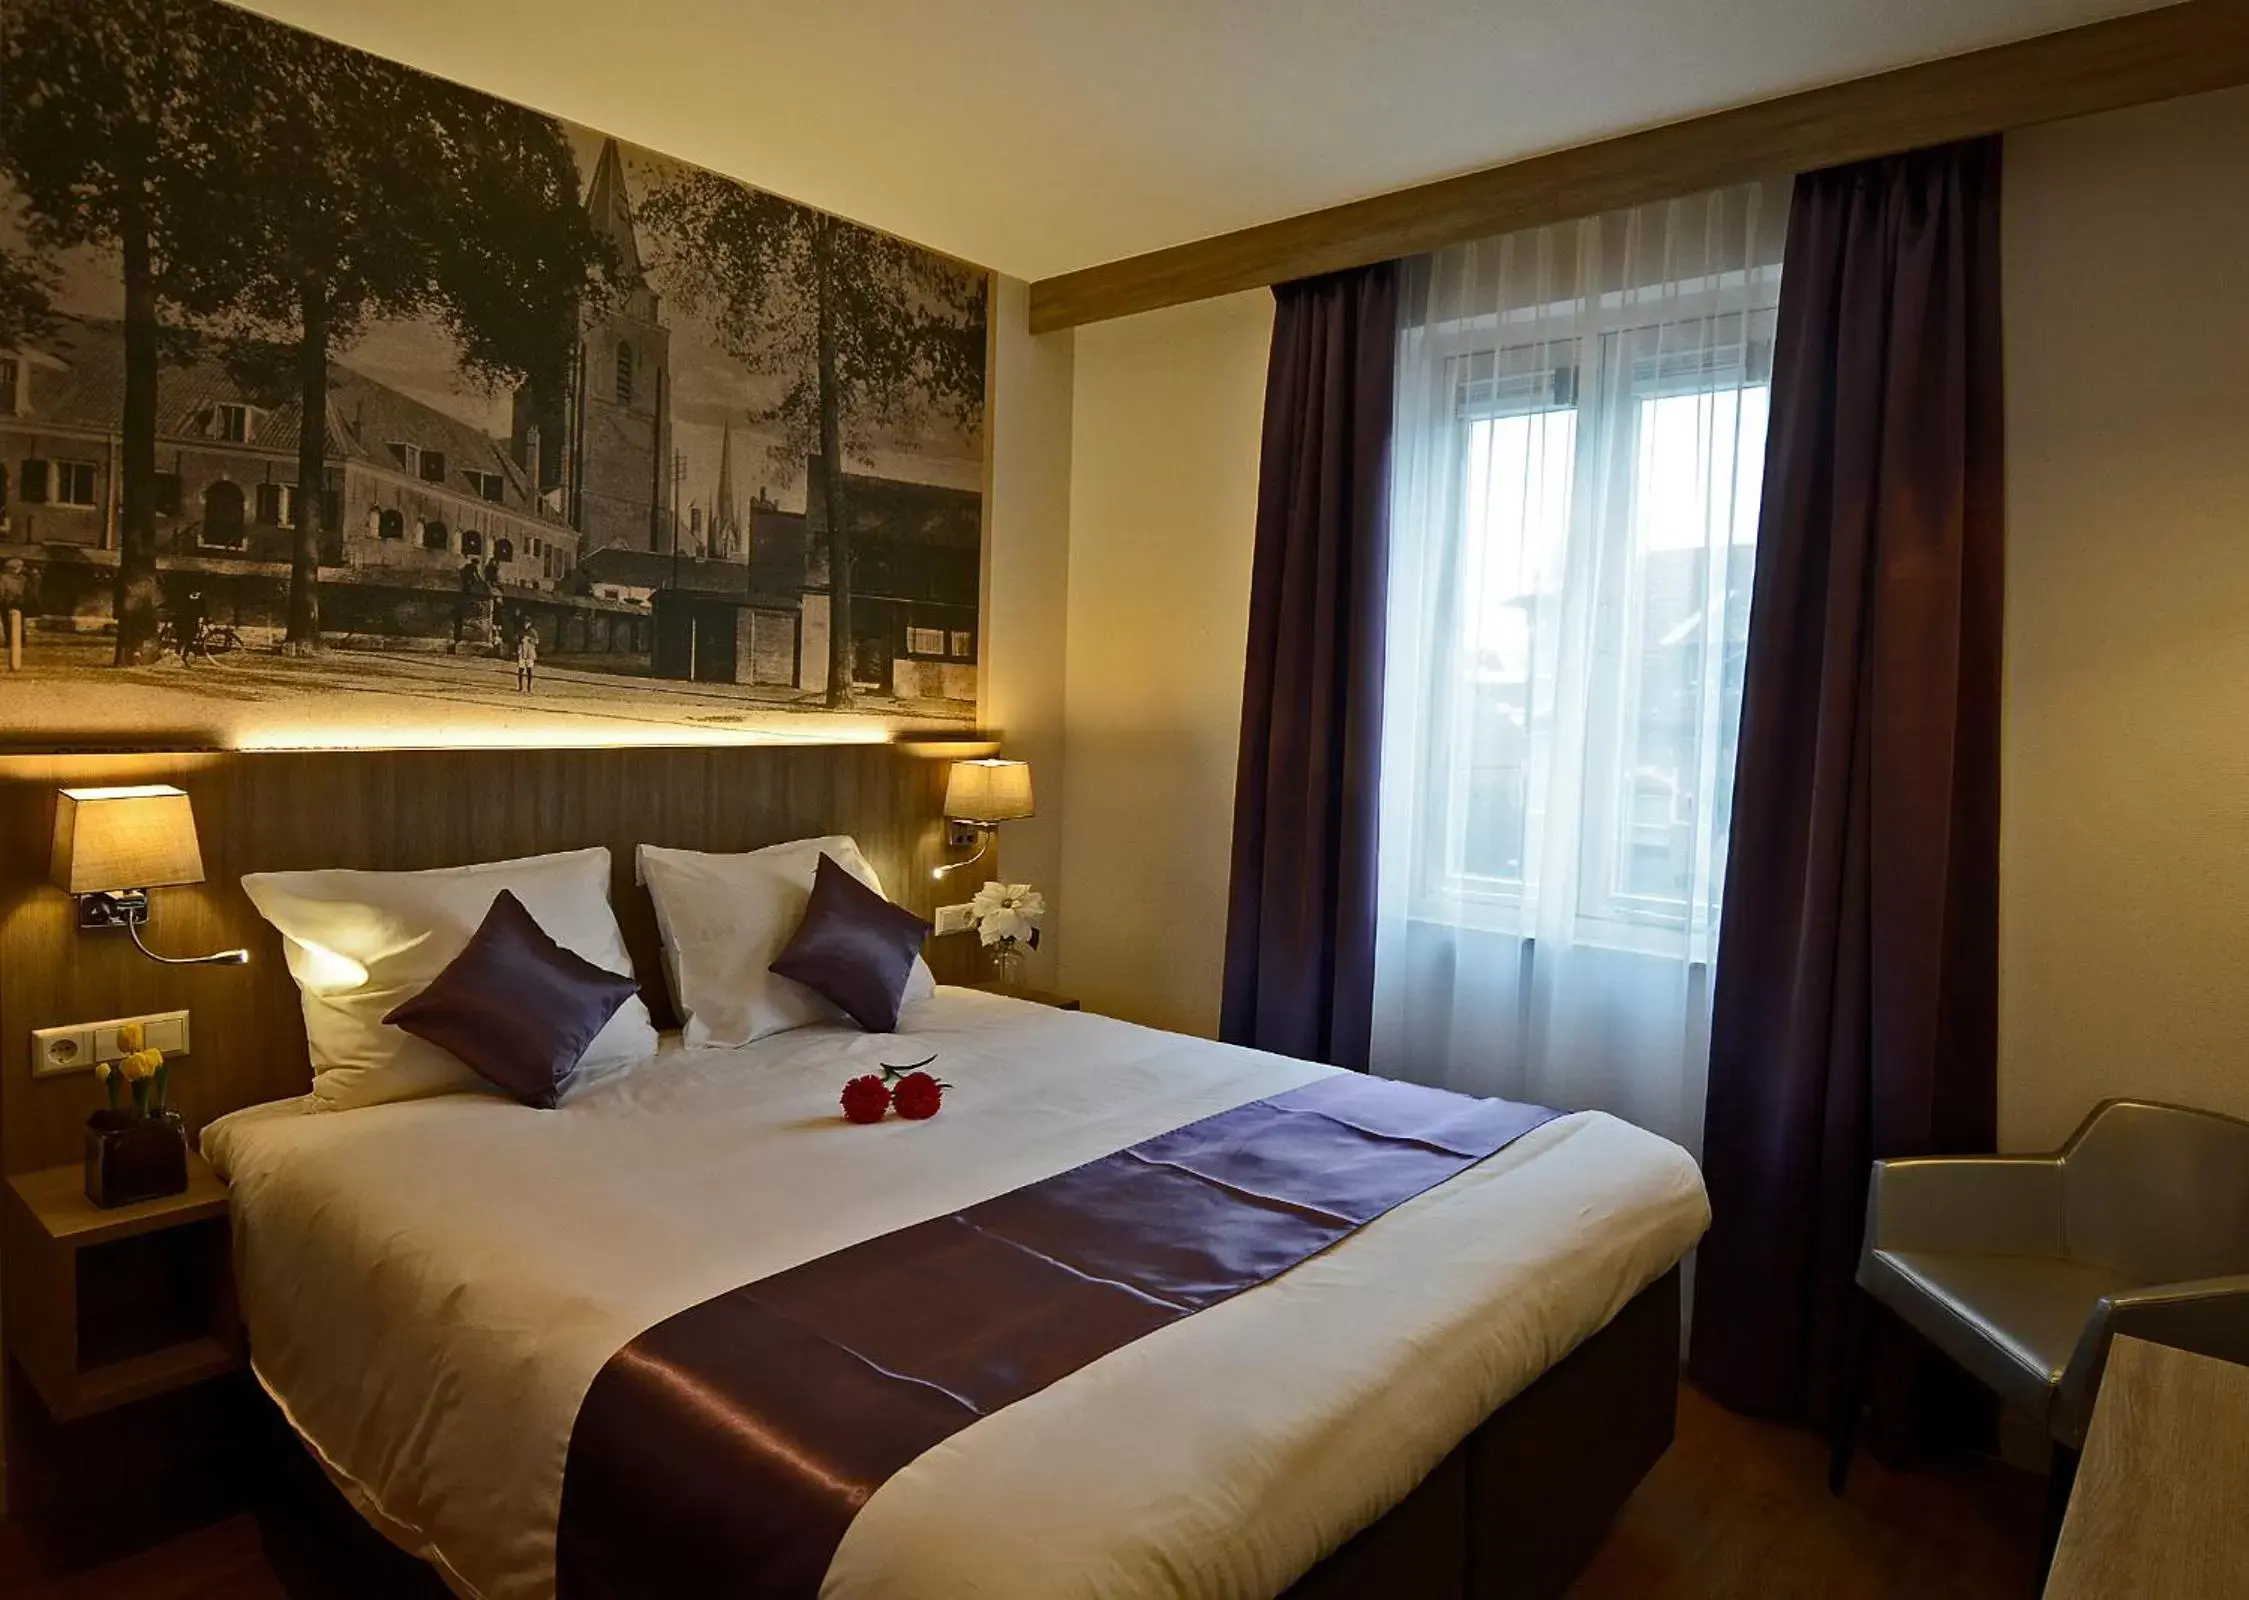 Day, Bed in Best Western City Hotel Woerden